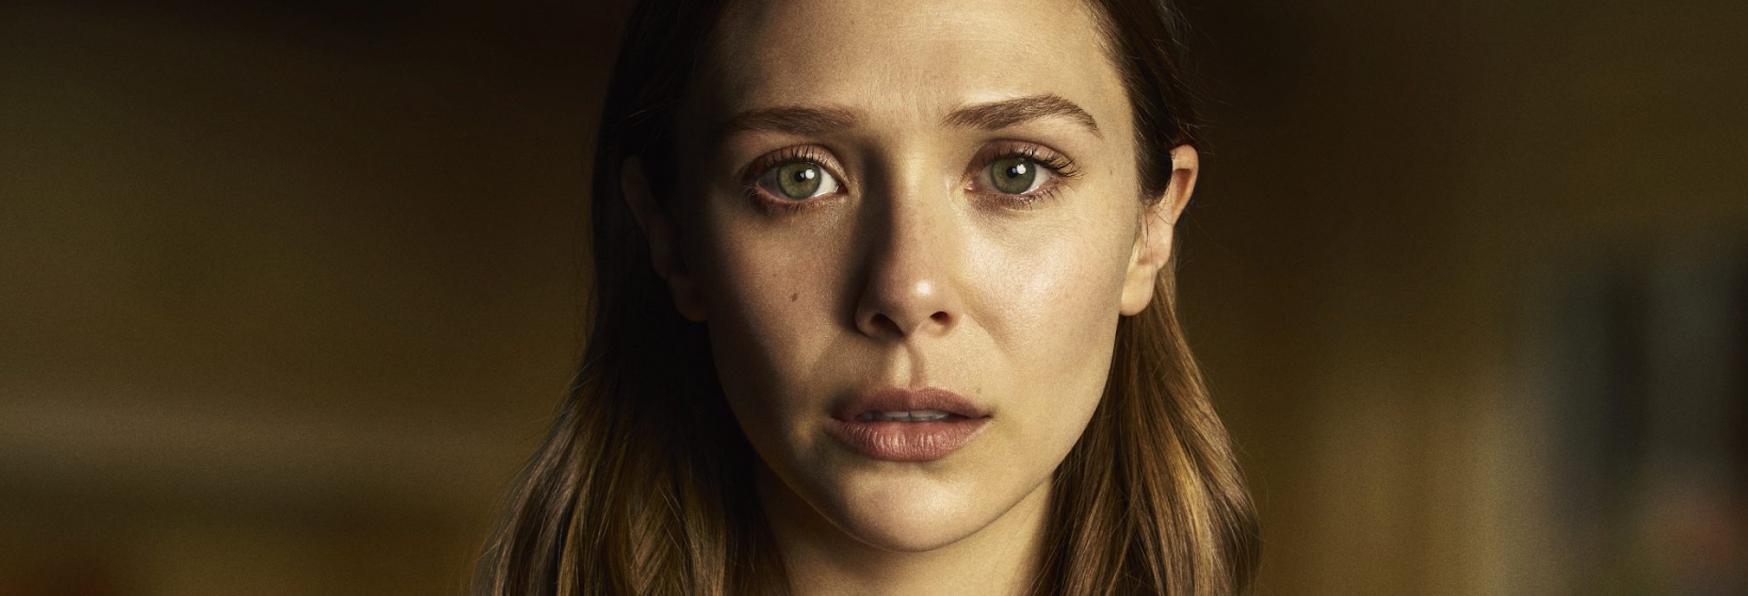 Love & Death: le prime Immagini di Elizabeth Olsen nei panni di Candy Montgomery nella Serie Limitata HBO Max